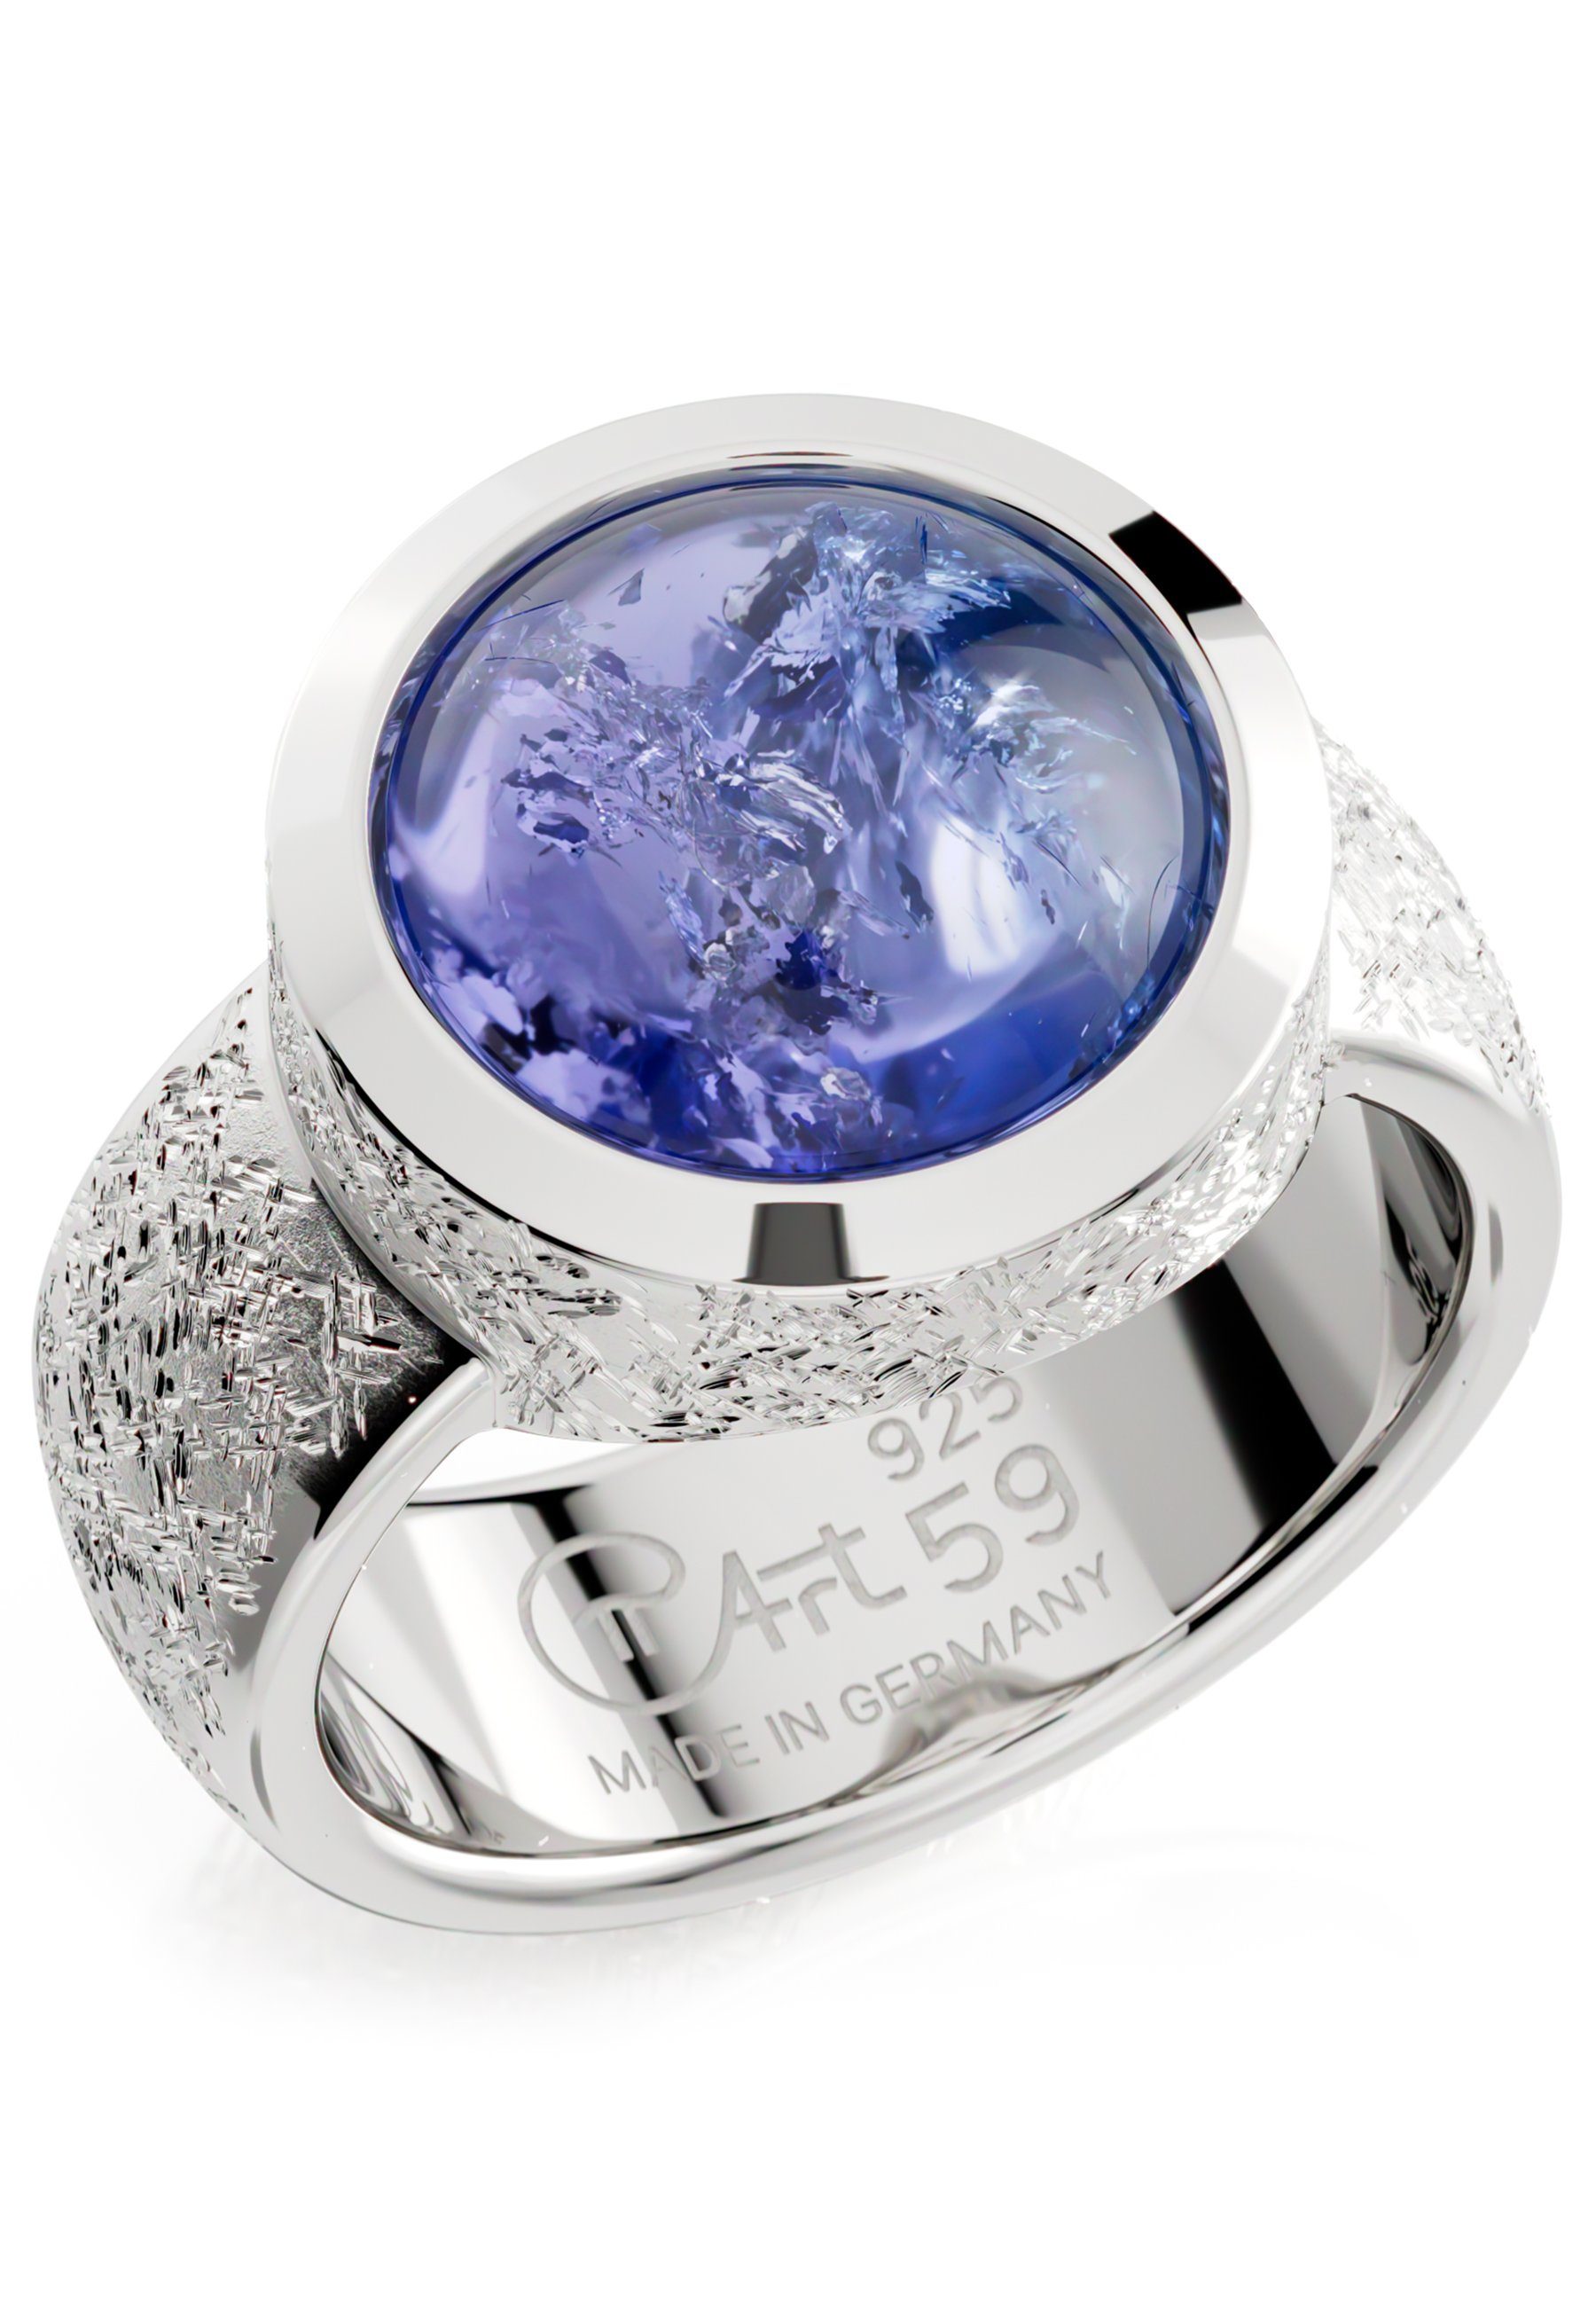 PiArt Silberring Echter Tansanit Edelstein - 5,5ct blau - 925 Sterling Silber